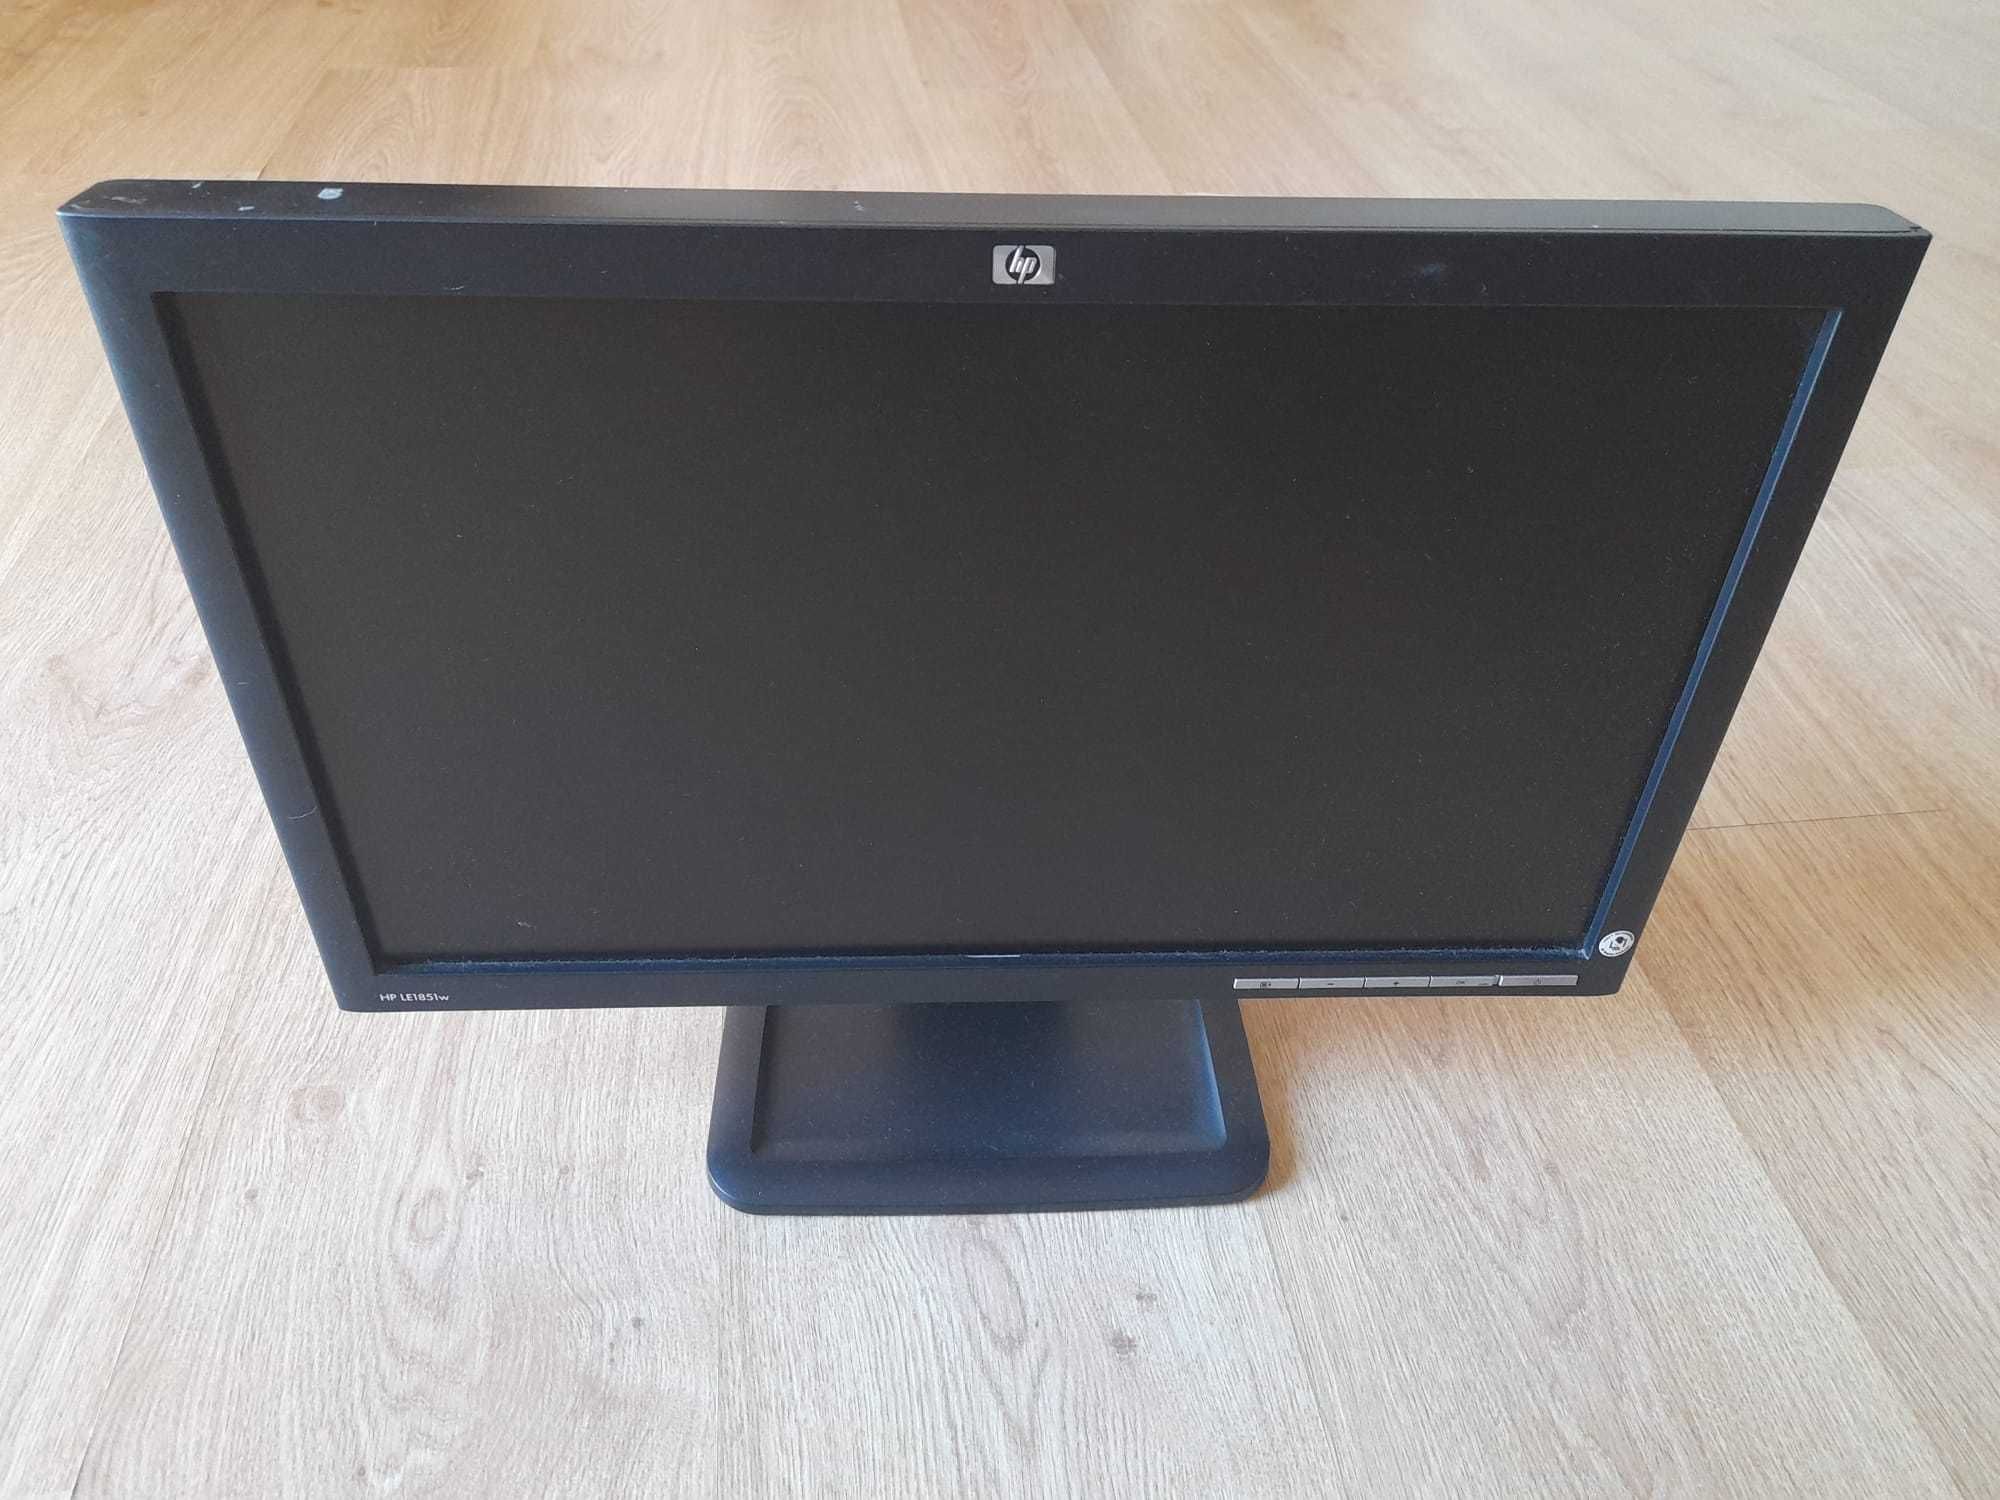 Monitor LCD HP LE1851w widescreen de 18,5 polegadas